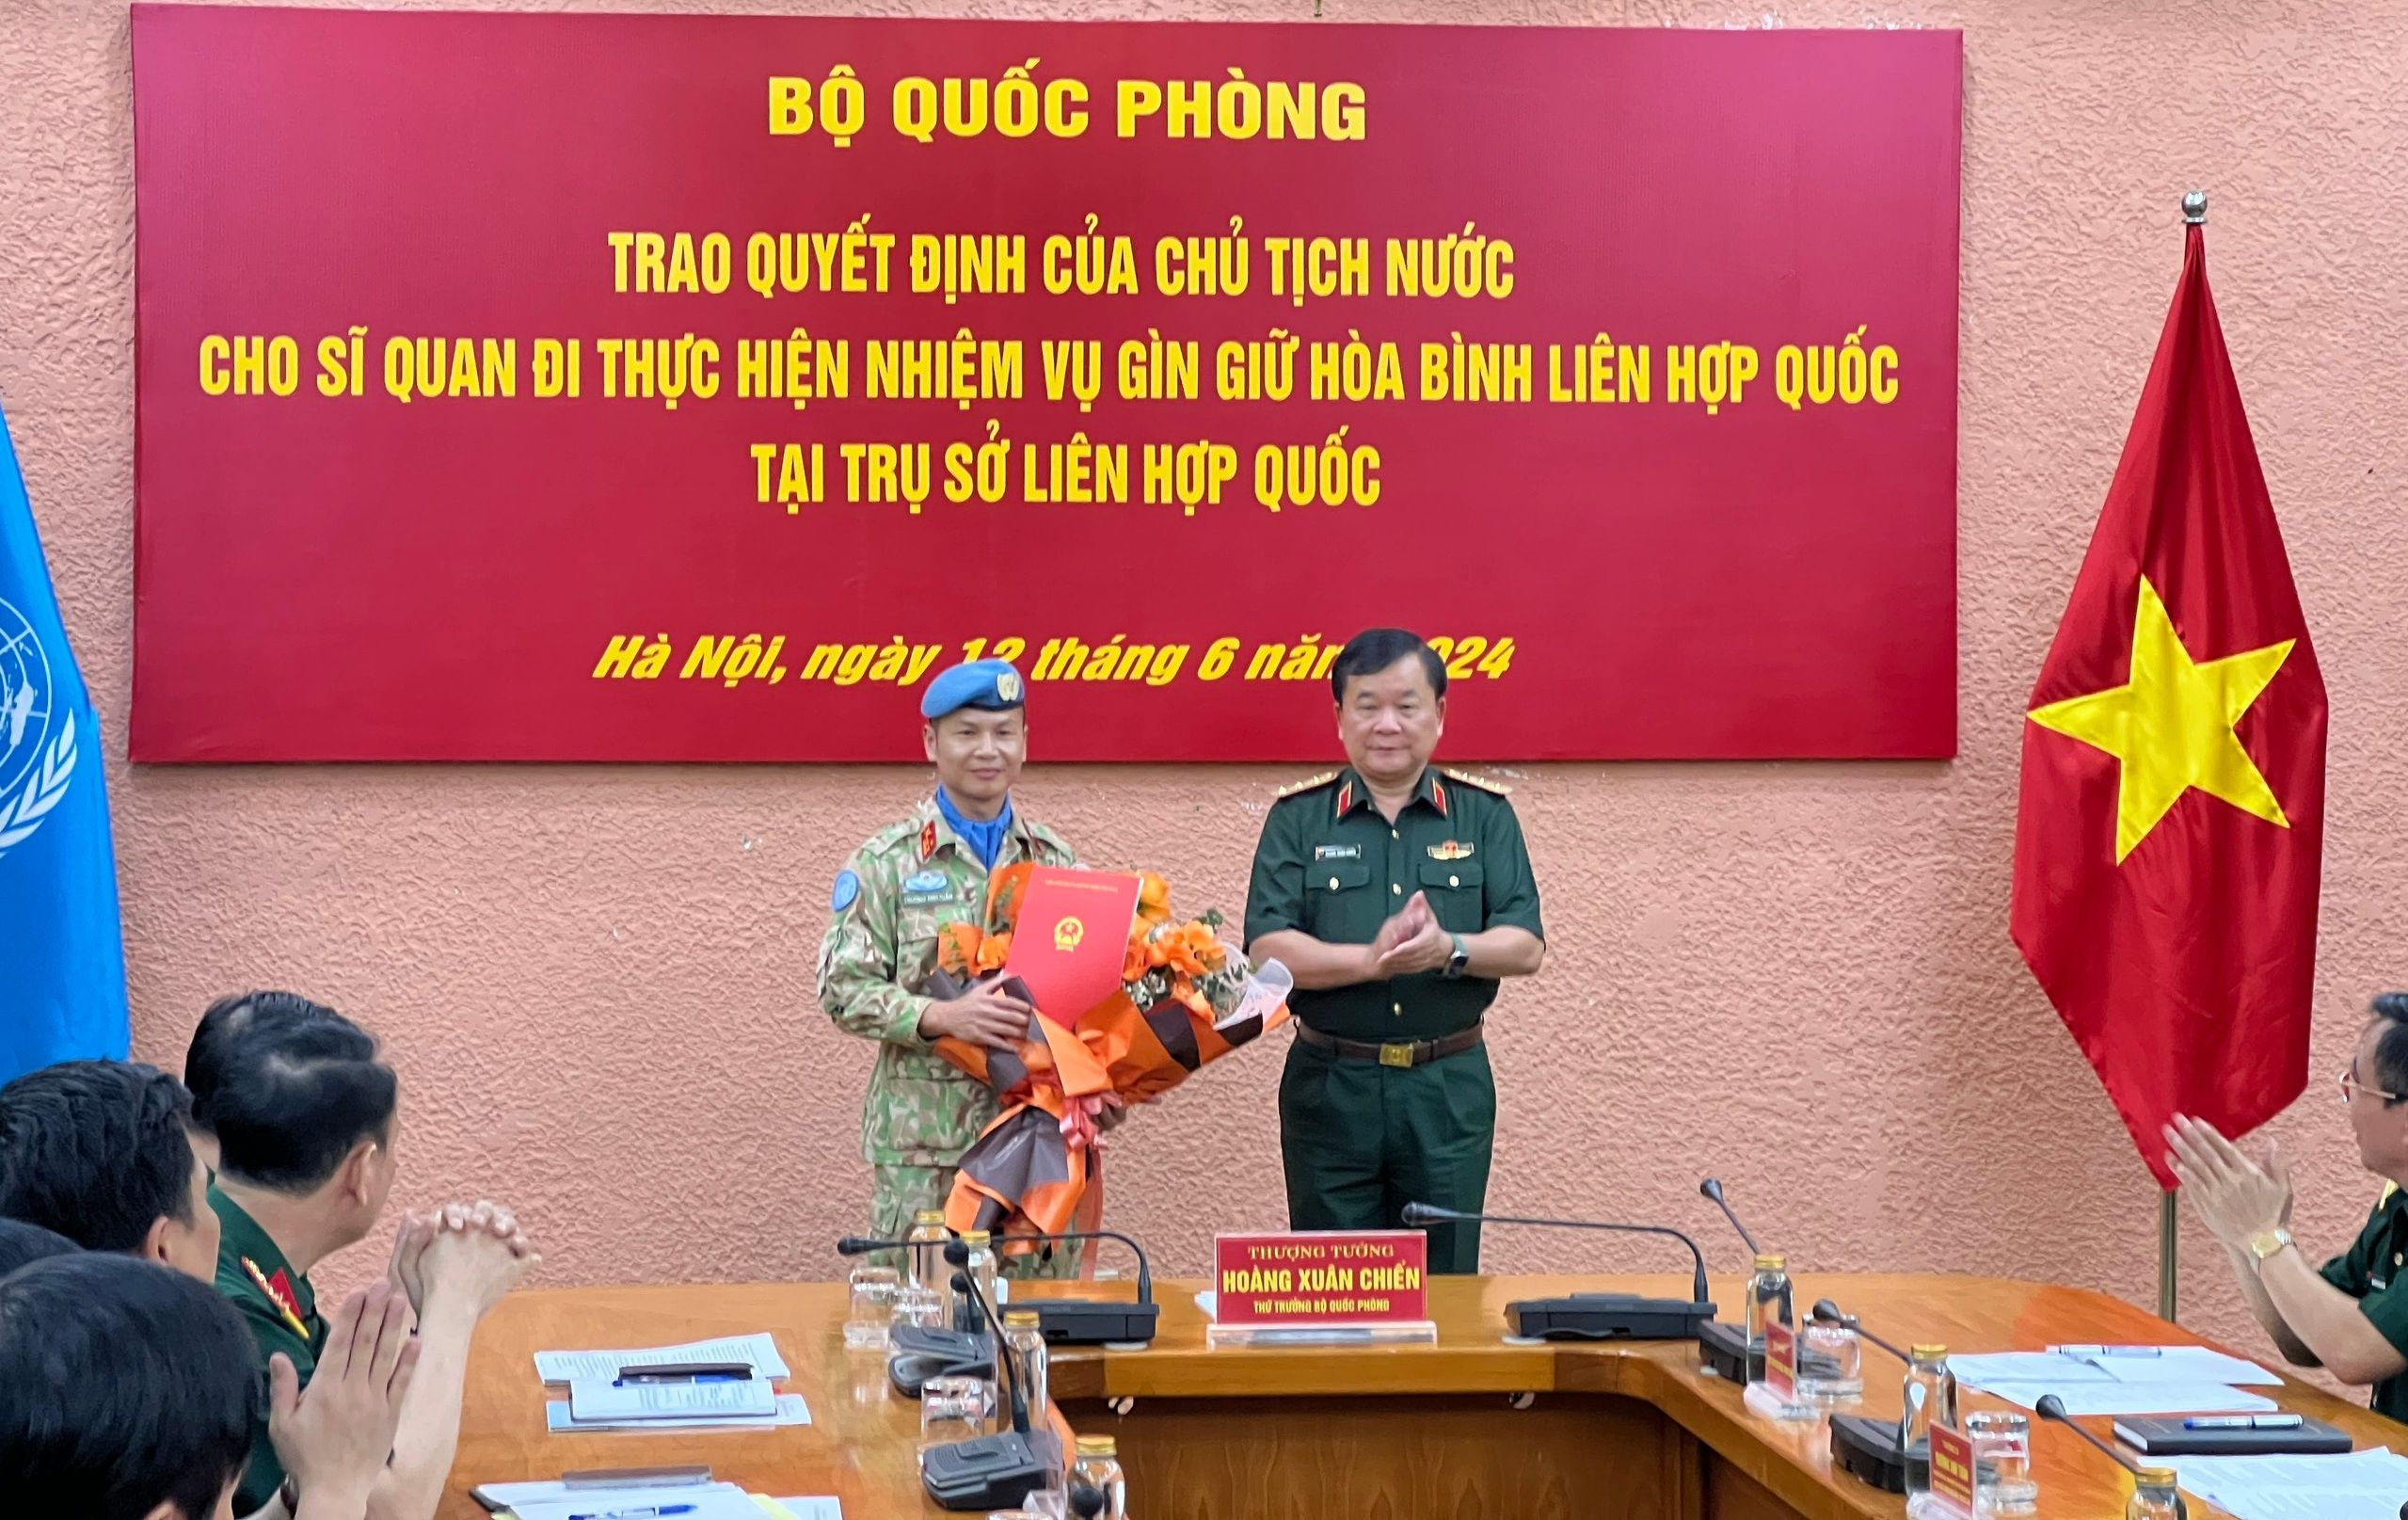 Thêm một sĩ quan Việt Nam trúng tuyển làm việc tại trụ sở Liên hợp quốc